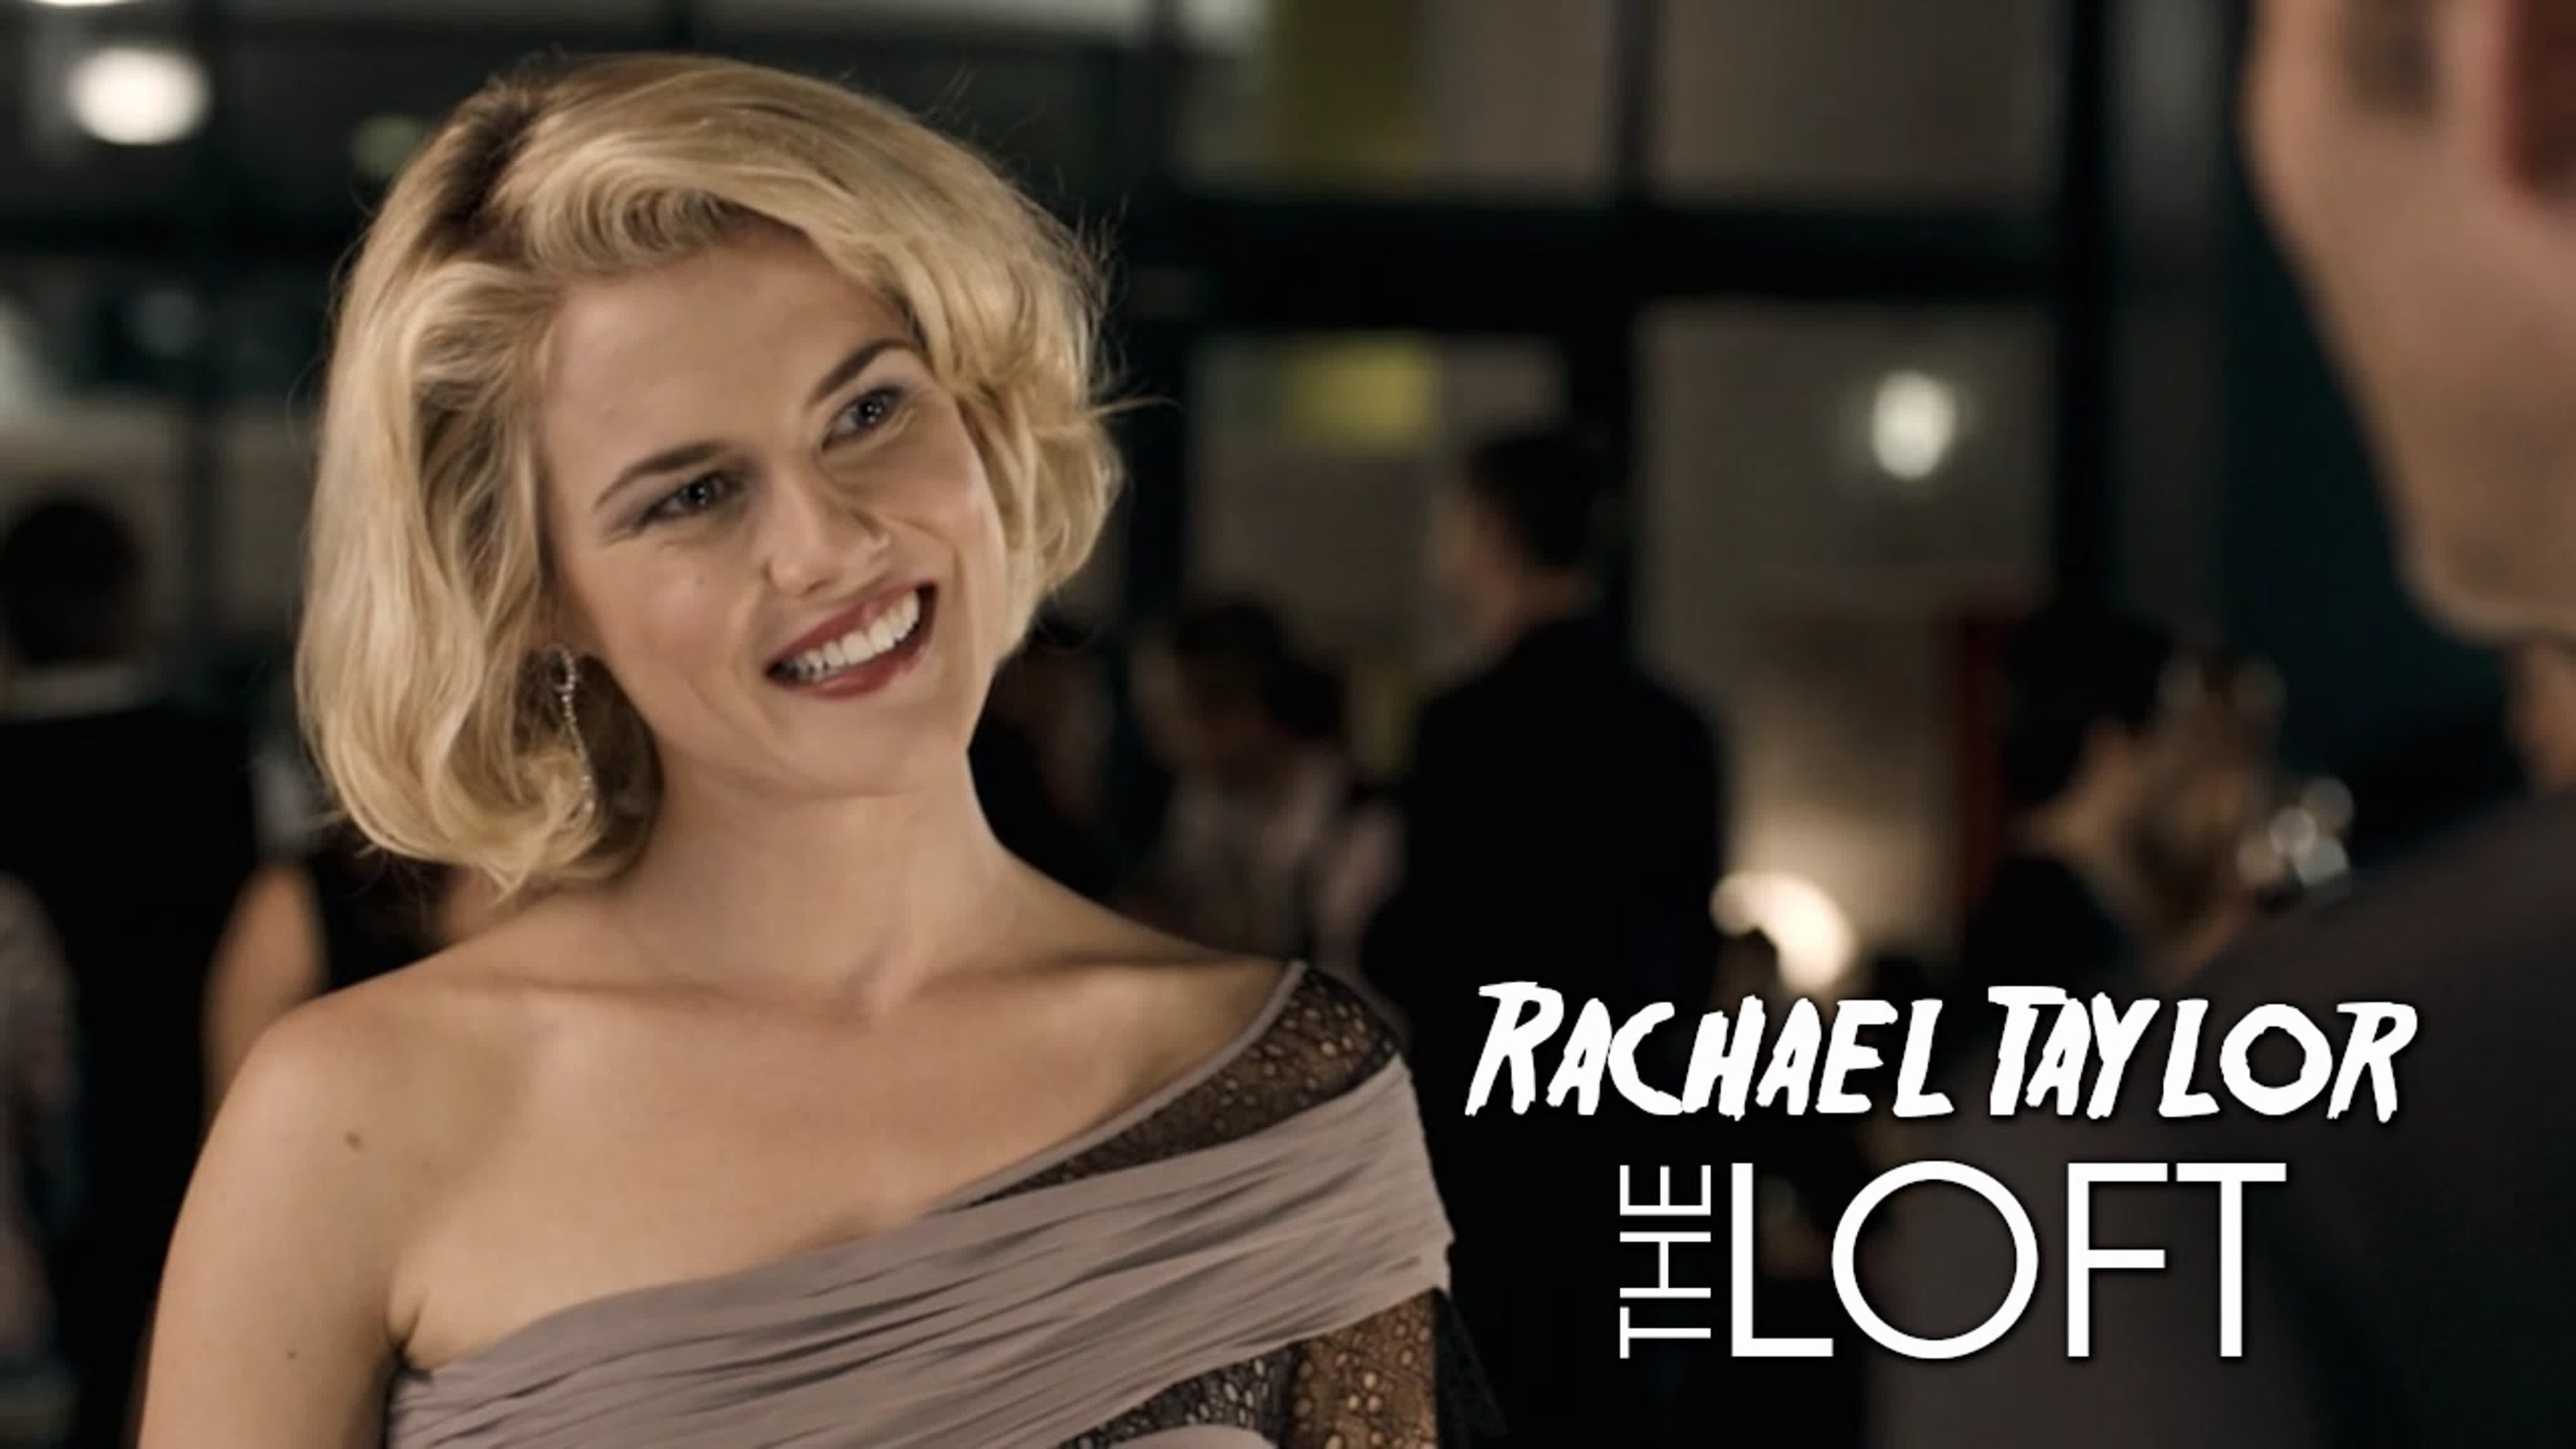 Rachael taylor (the loft, 2014) - BEST XXX TUBE